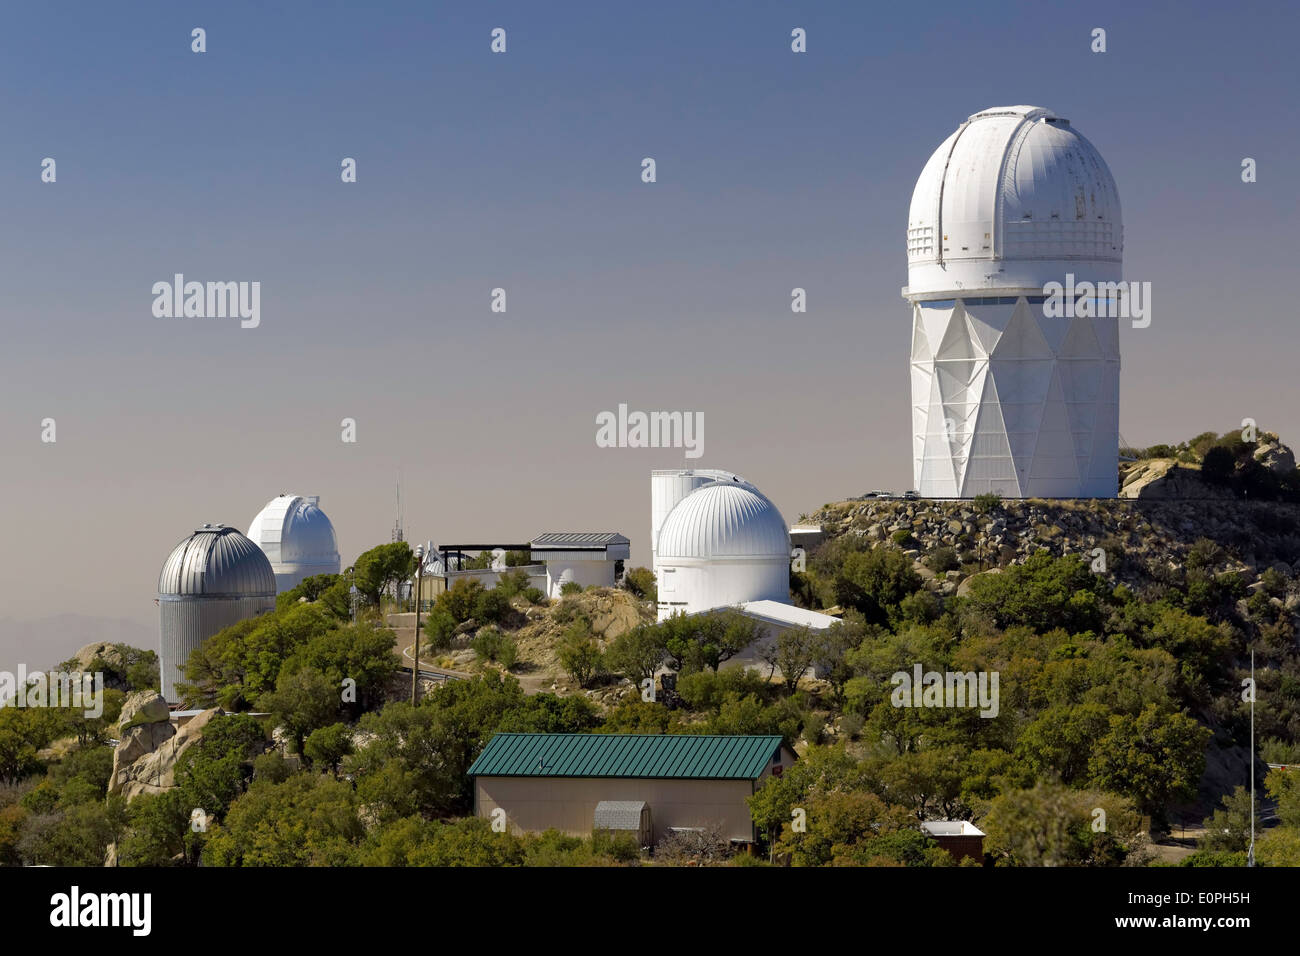 Telescopes on Kitt Peak National Observatory, Arizona Stock Photo